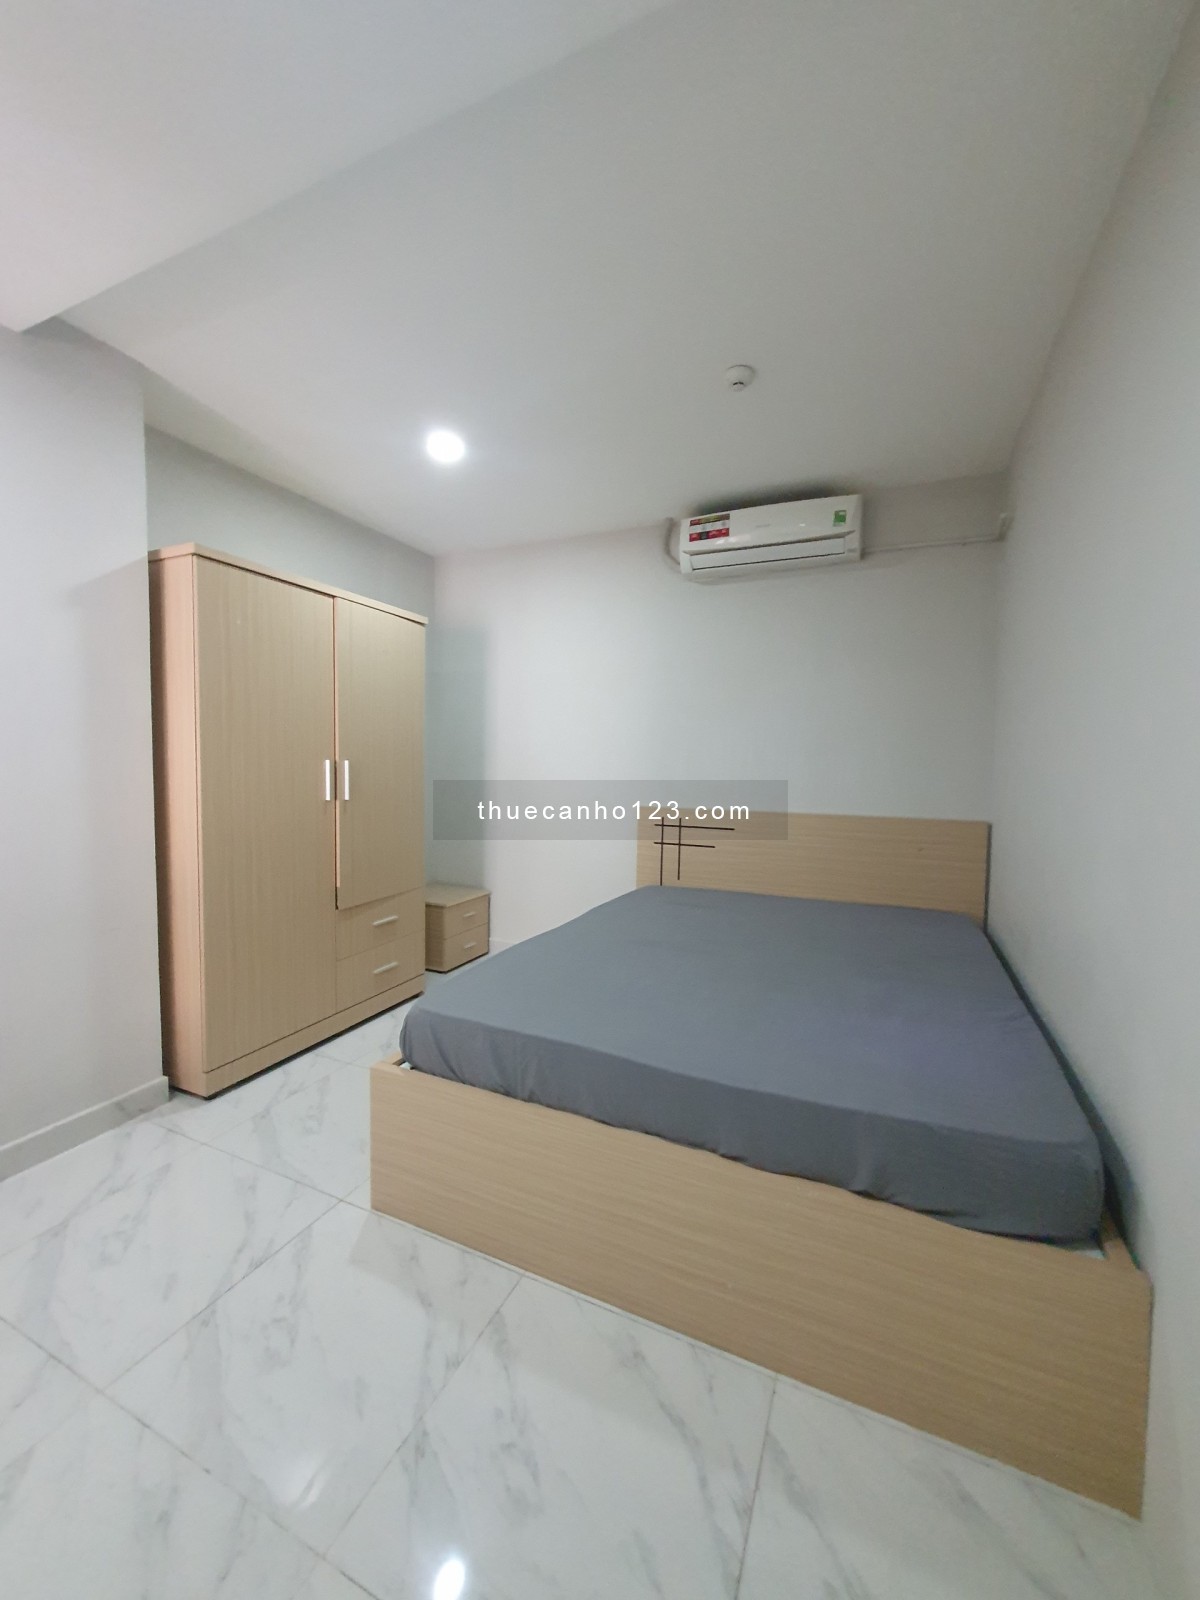 Căn hộ 2 phòng ngủ, full nội thất, ban công trống sẵn tại quận Phú Nhuận, giá 12tr5/tháng